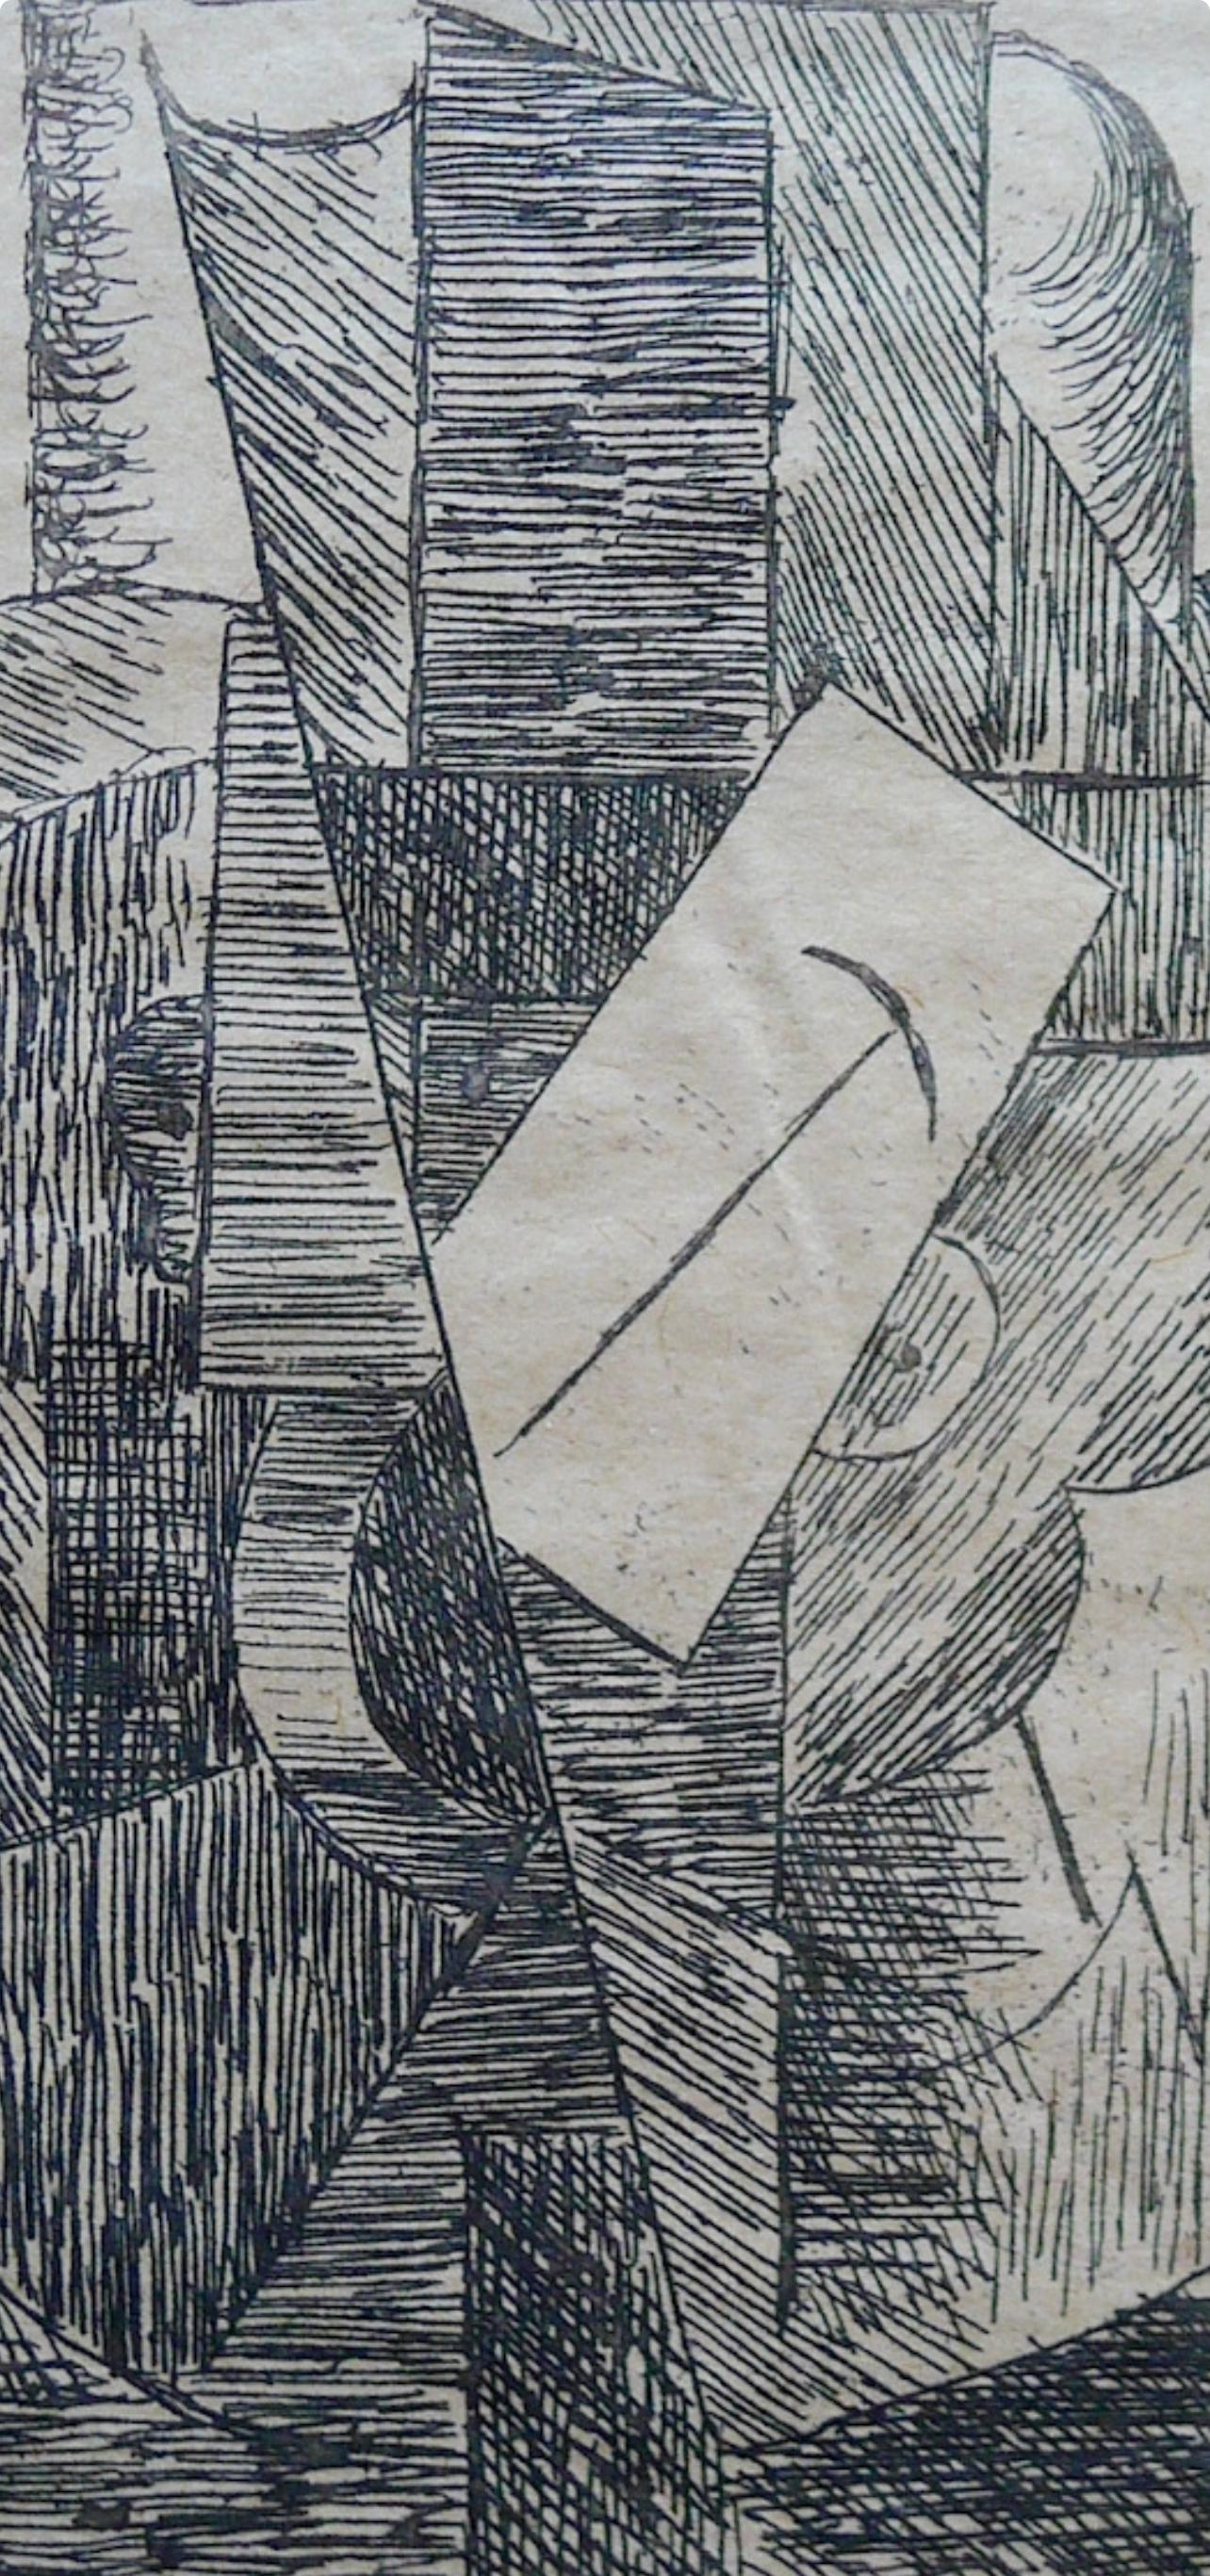 Picasso, L'Homme au chapeau (Bloch 29; Baer 42; Cramer 46), Du cubisme (nach) (Moderne), Print, von Pablo Picasso